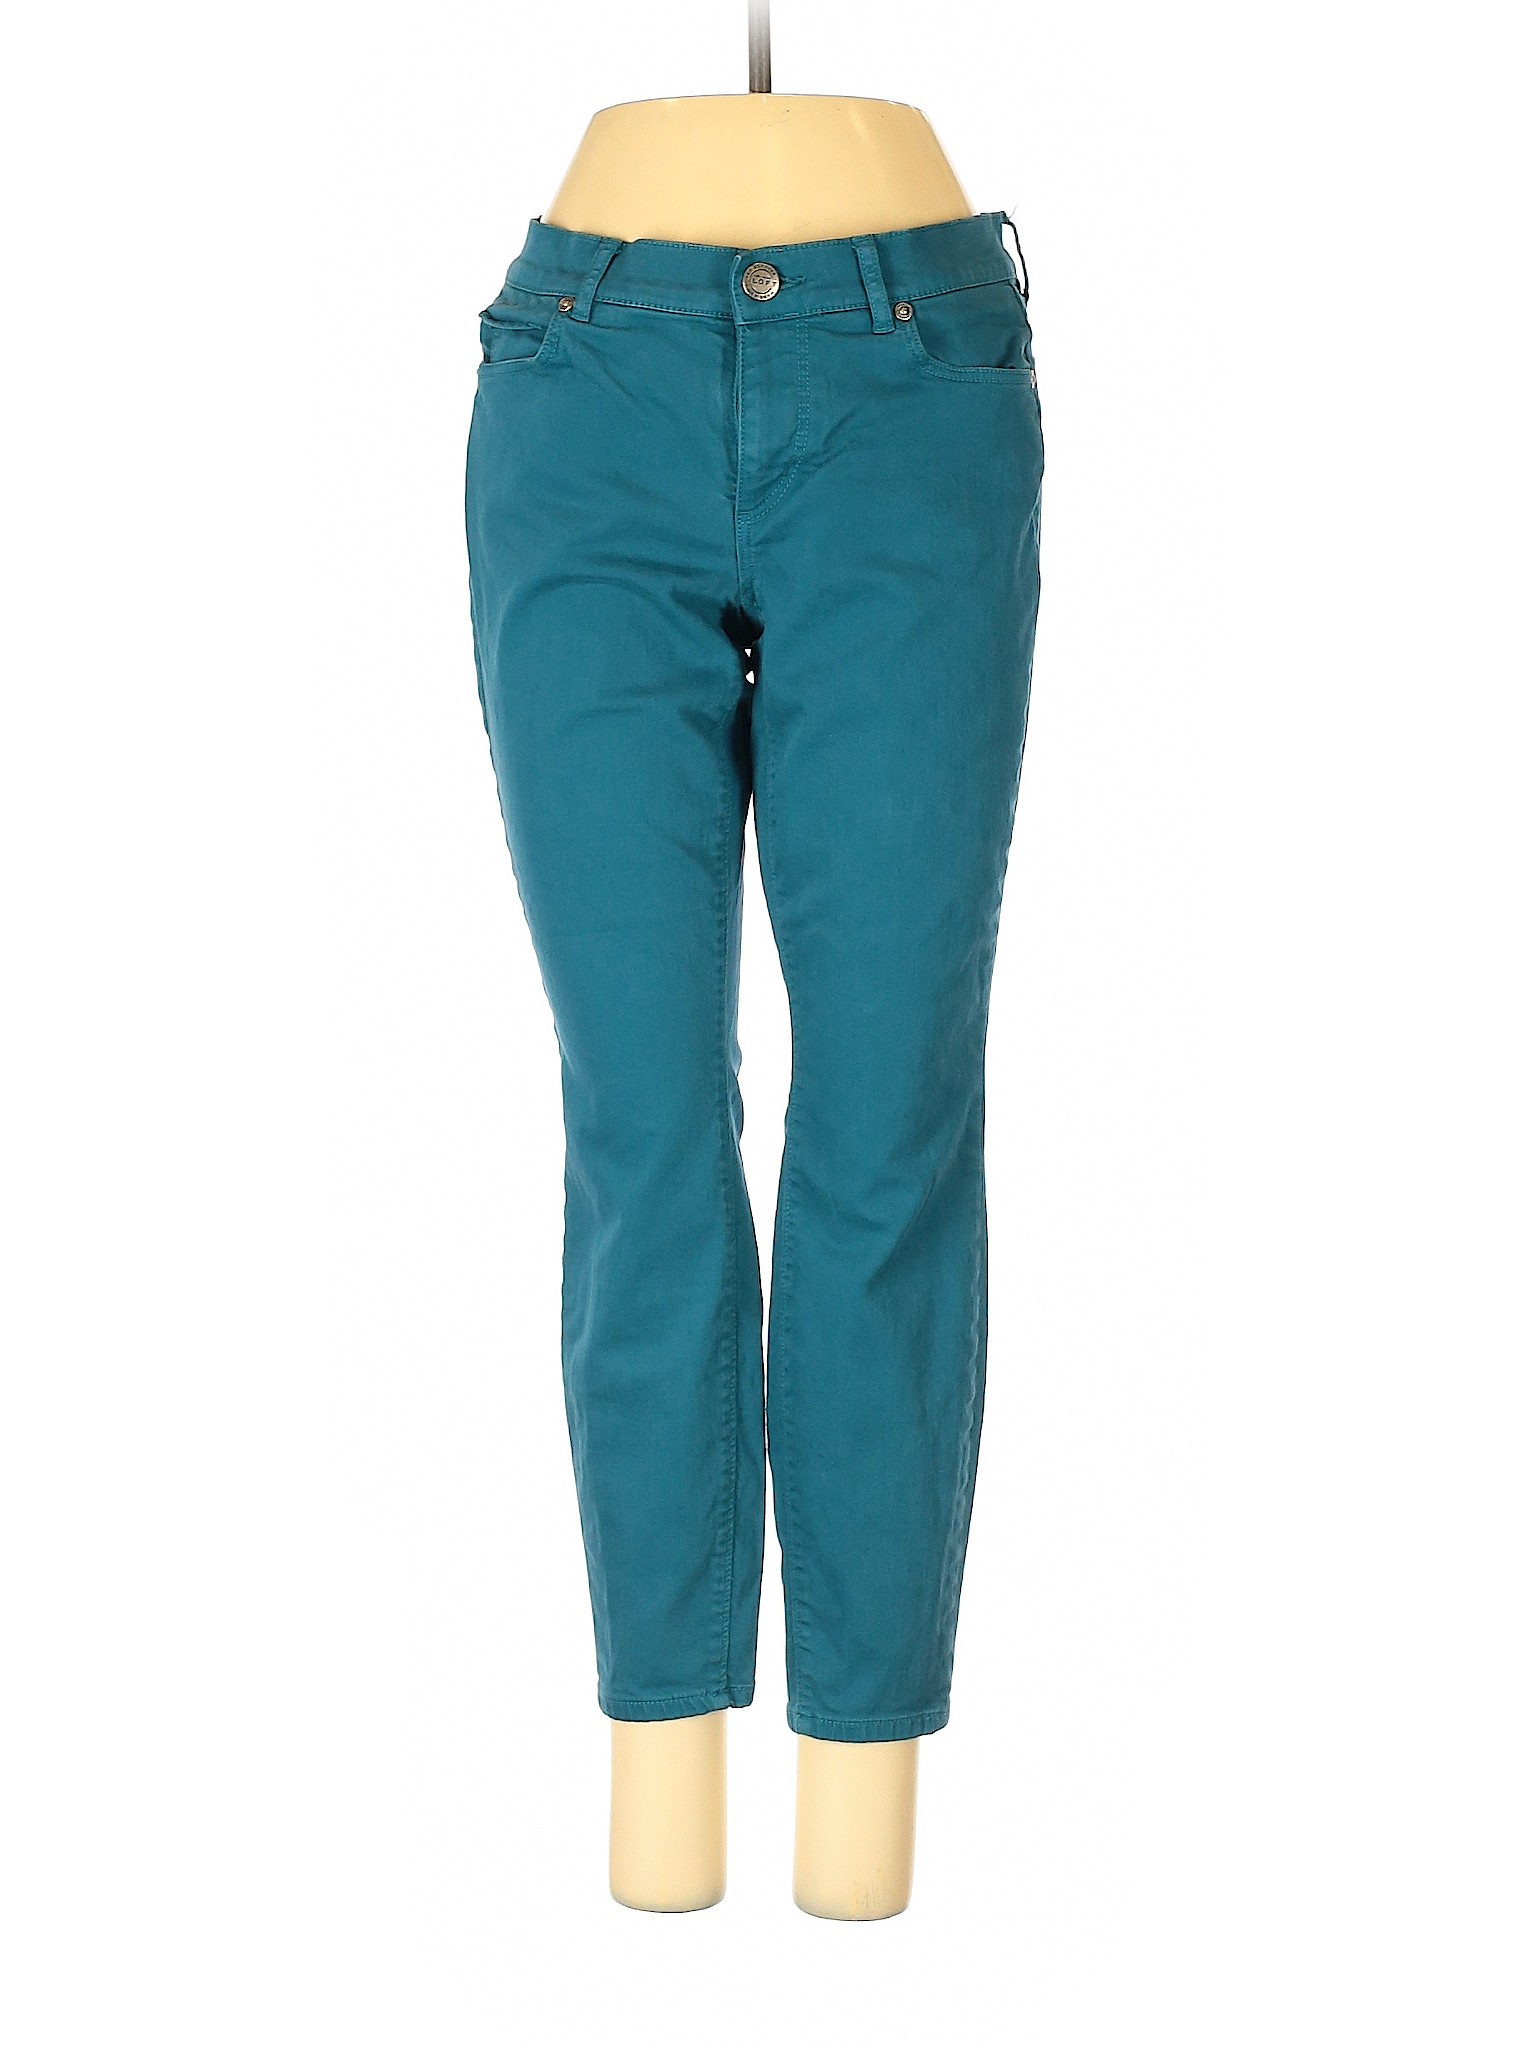 Ann Taylor LOFT Women Green Jeans 2 | eBay